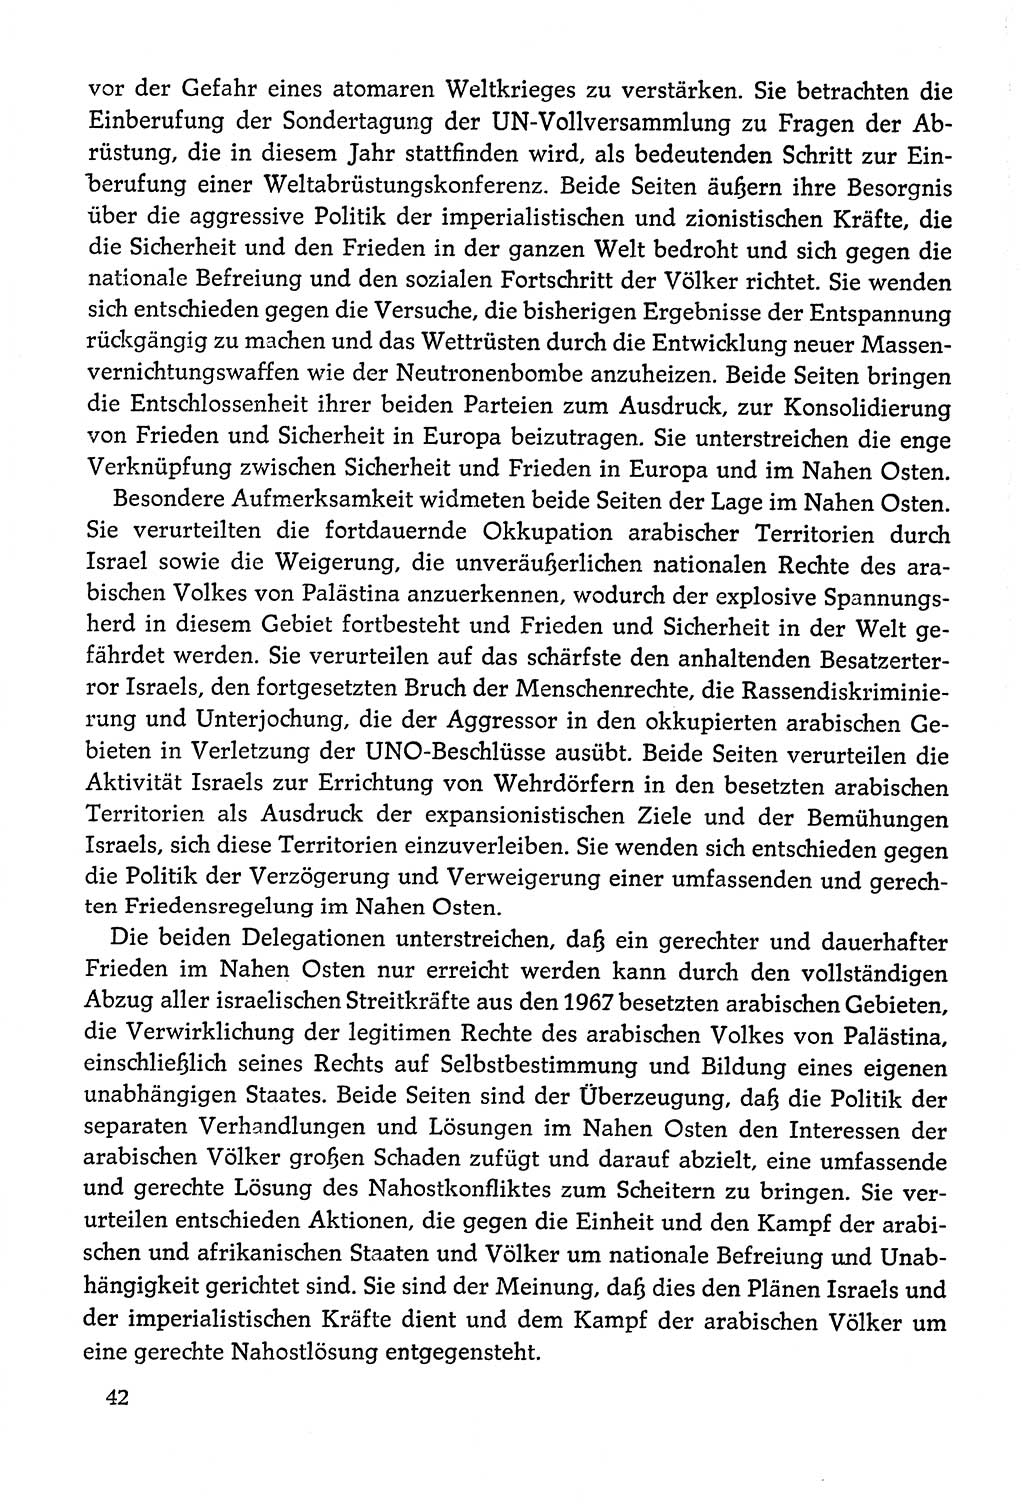 Dokumente der Sozialistischen Einheitspartei Deutschlands (SED) [Deutsche Demokratische Republik (DDR)] 1978-1979, Seite 42 (Dok. SED DDR 1978-1979, S. 42)